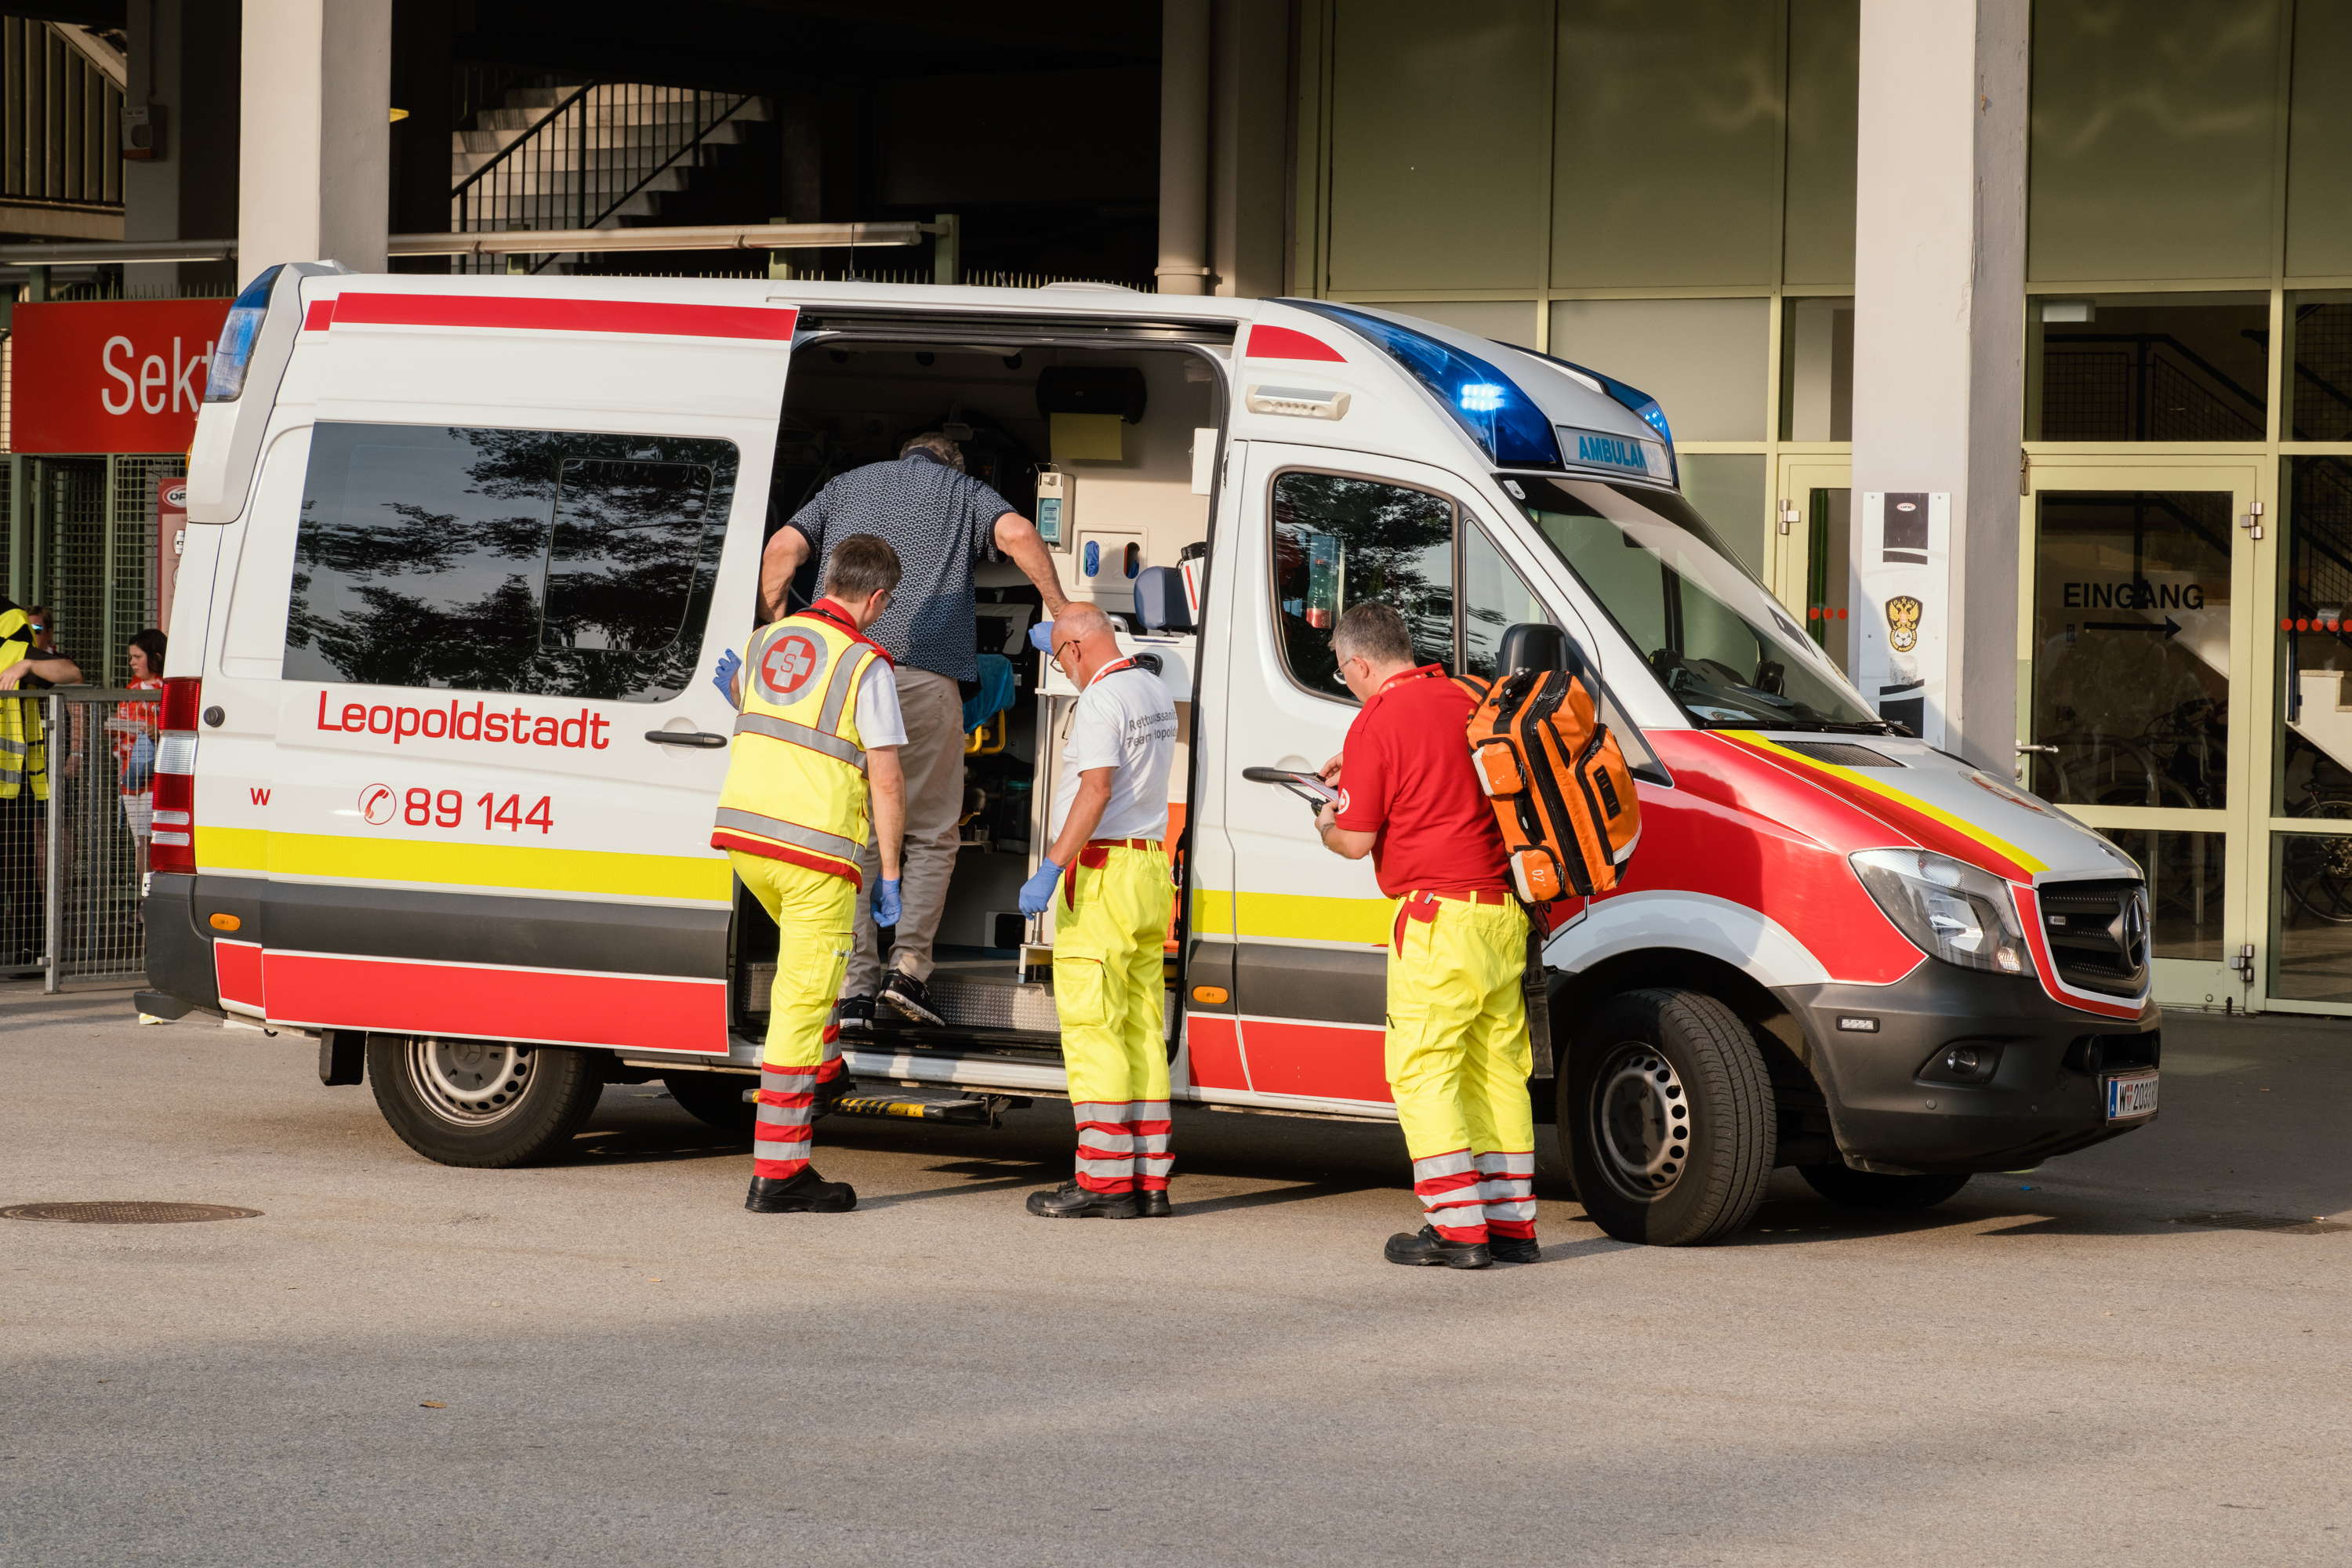 Patient betritt Rettungsauto bei Ernst-Happel-Stadion und drei Rettungssanitäter stehen vor dem Auto